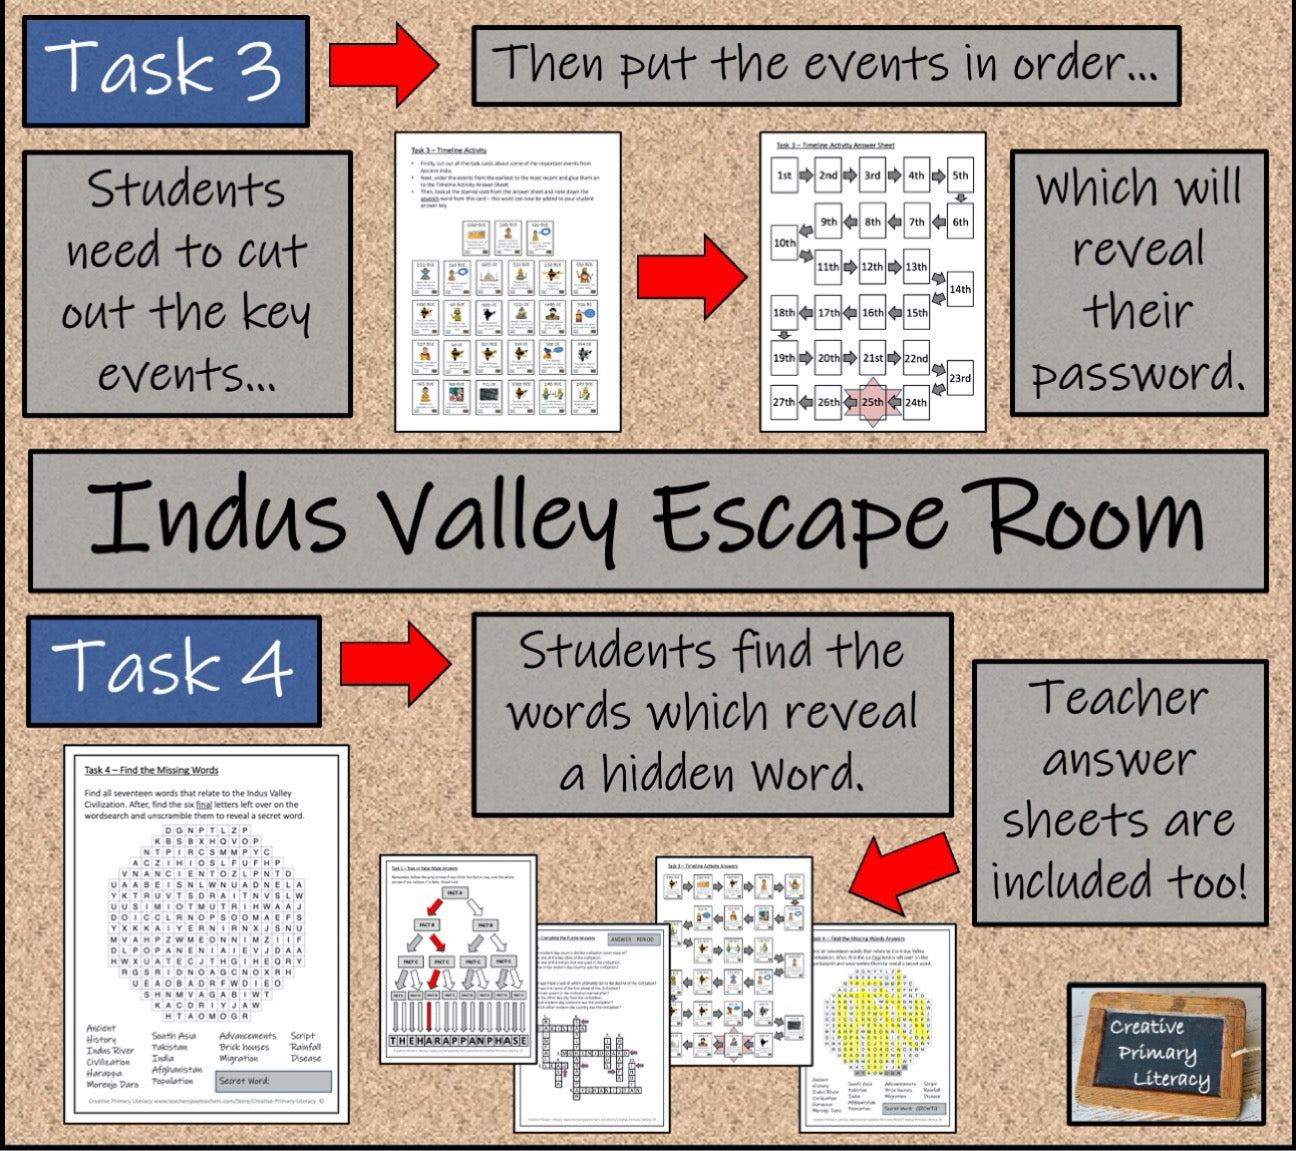 Ancient India Escape Room Activity Bundle | 5th Grade & 6th Grade